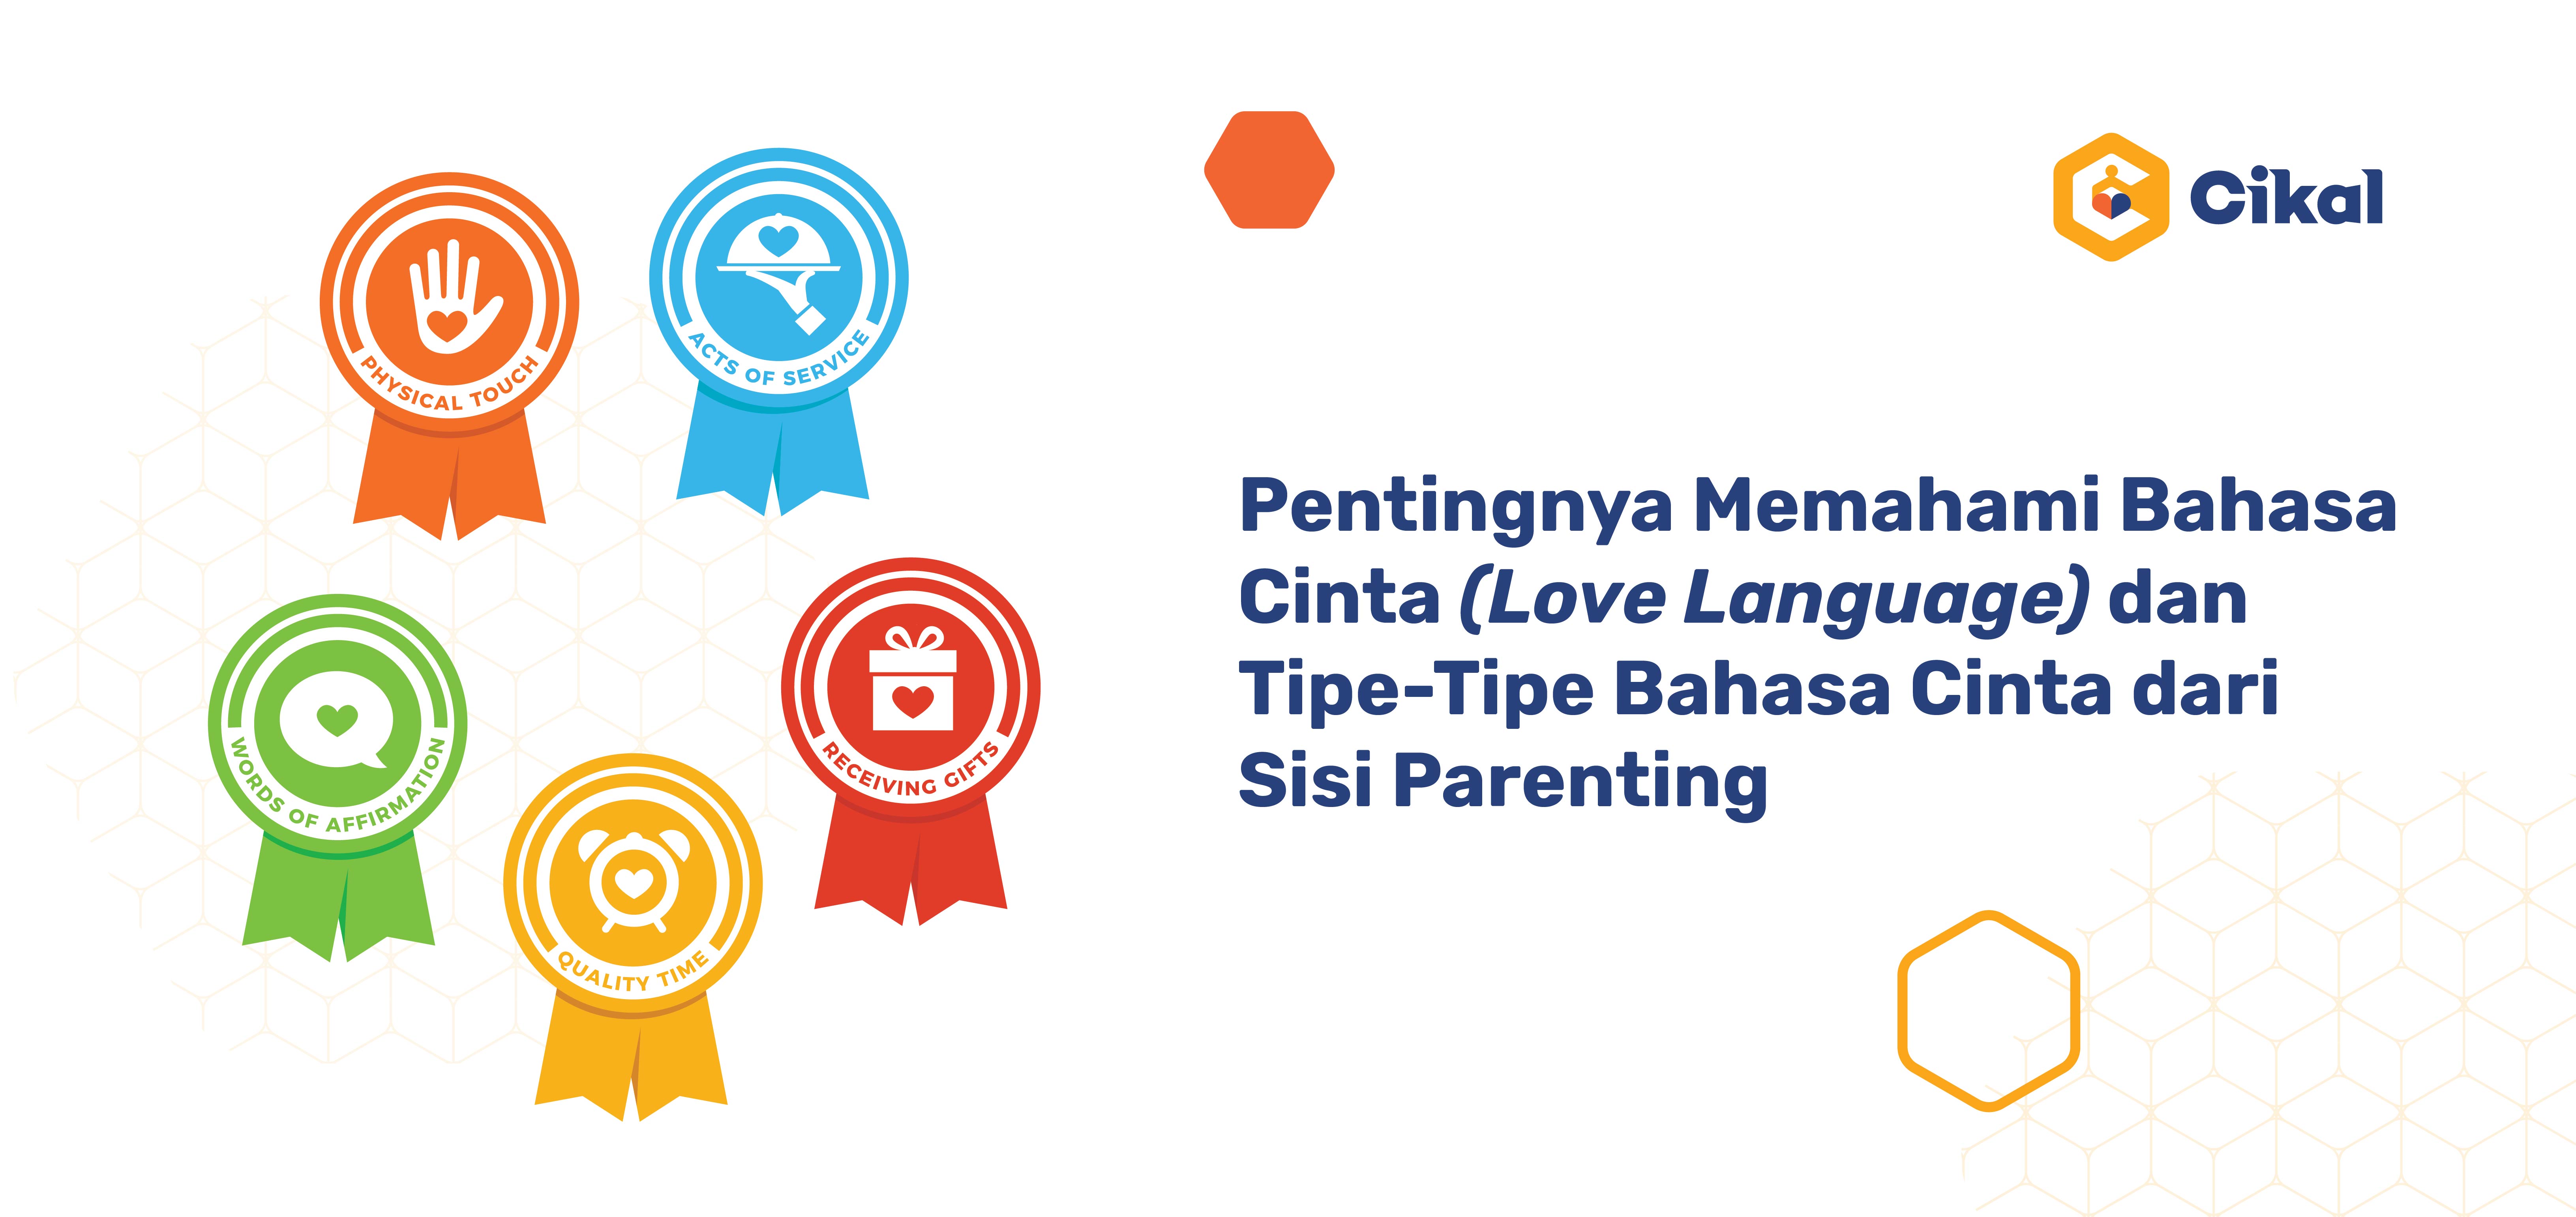 Pentingnya Memahami Bahasa Cinta (Love Language) dan Tipe-Tipe Bahasa Cinta dari Sisi Parenting 